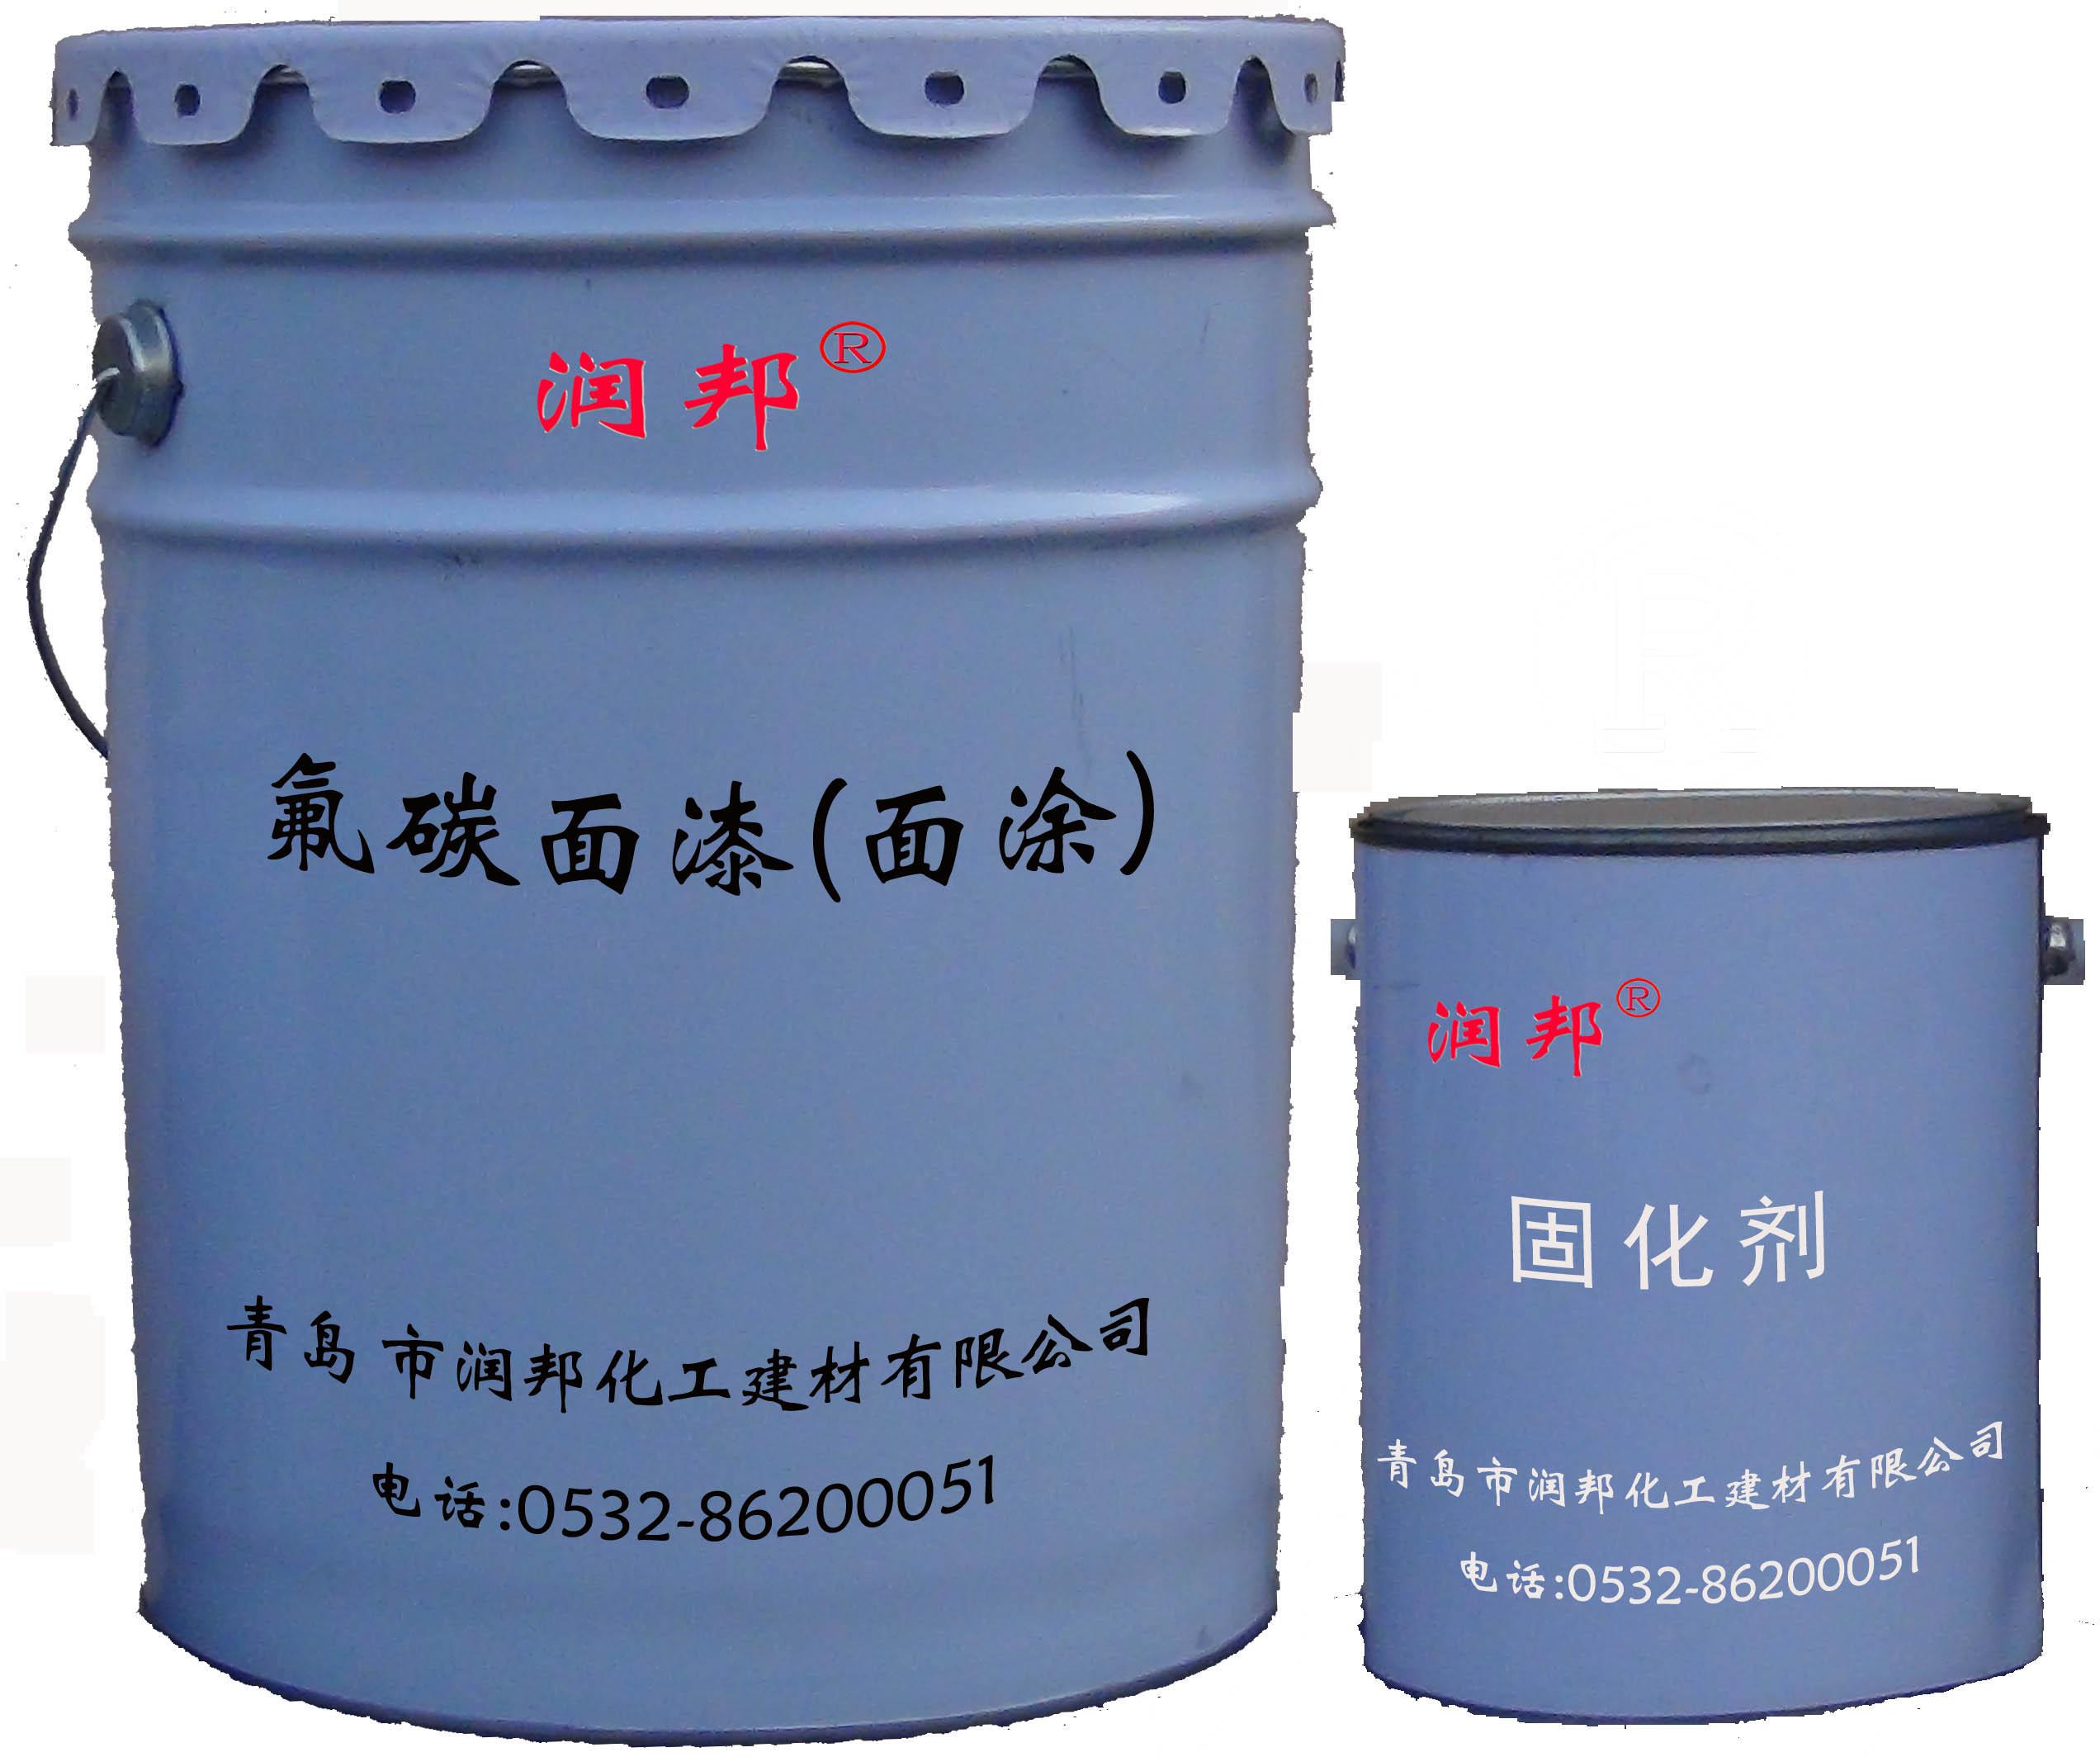 SHJS-302氟碳面漆(面涂)